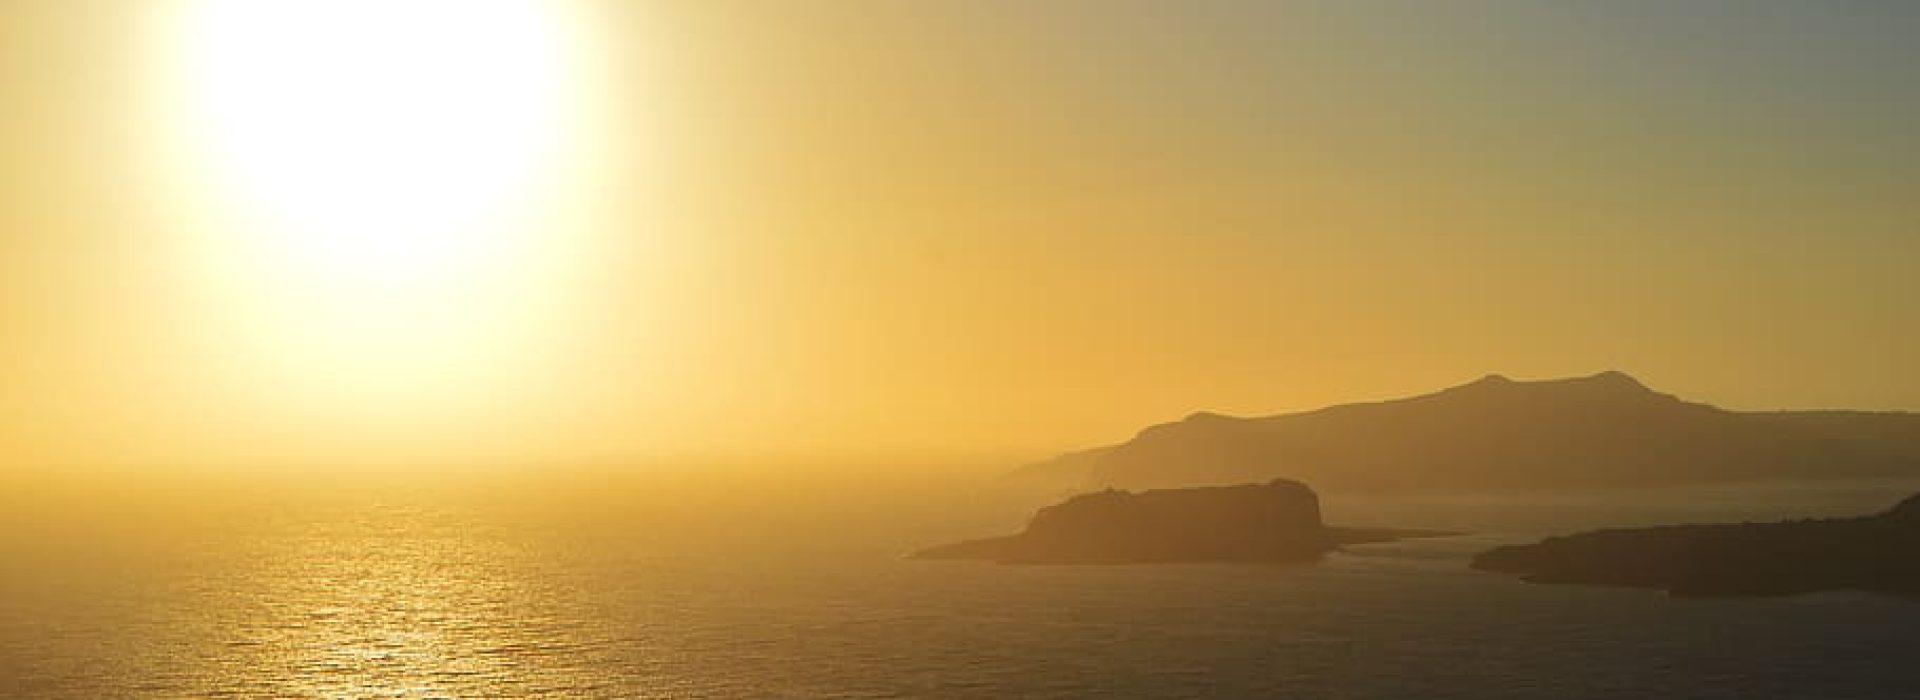 greece-megalochori-seascape-sunset